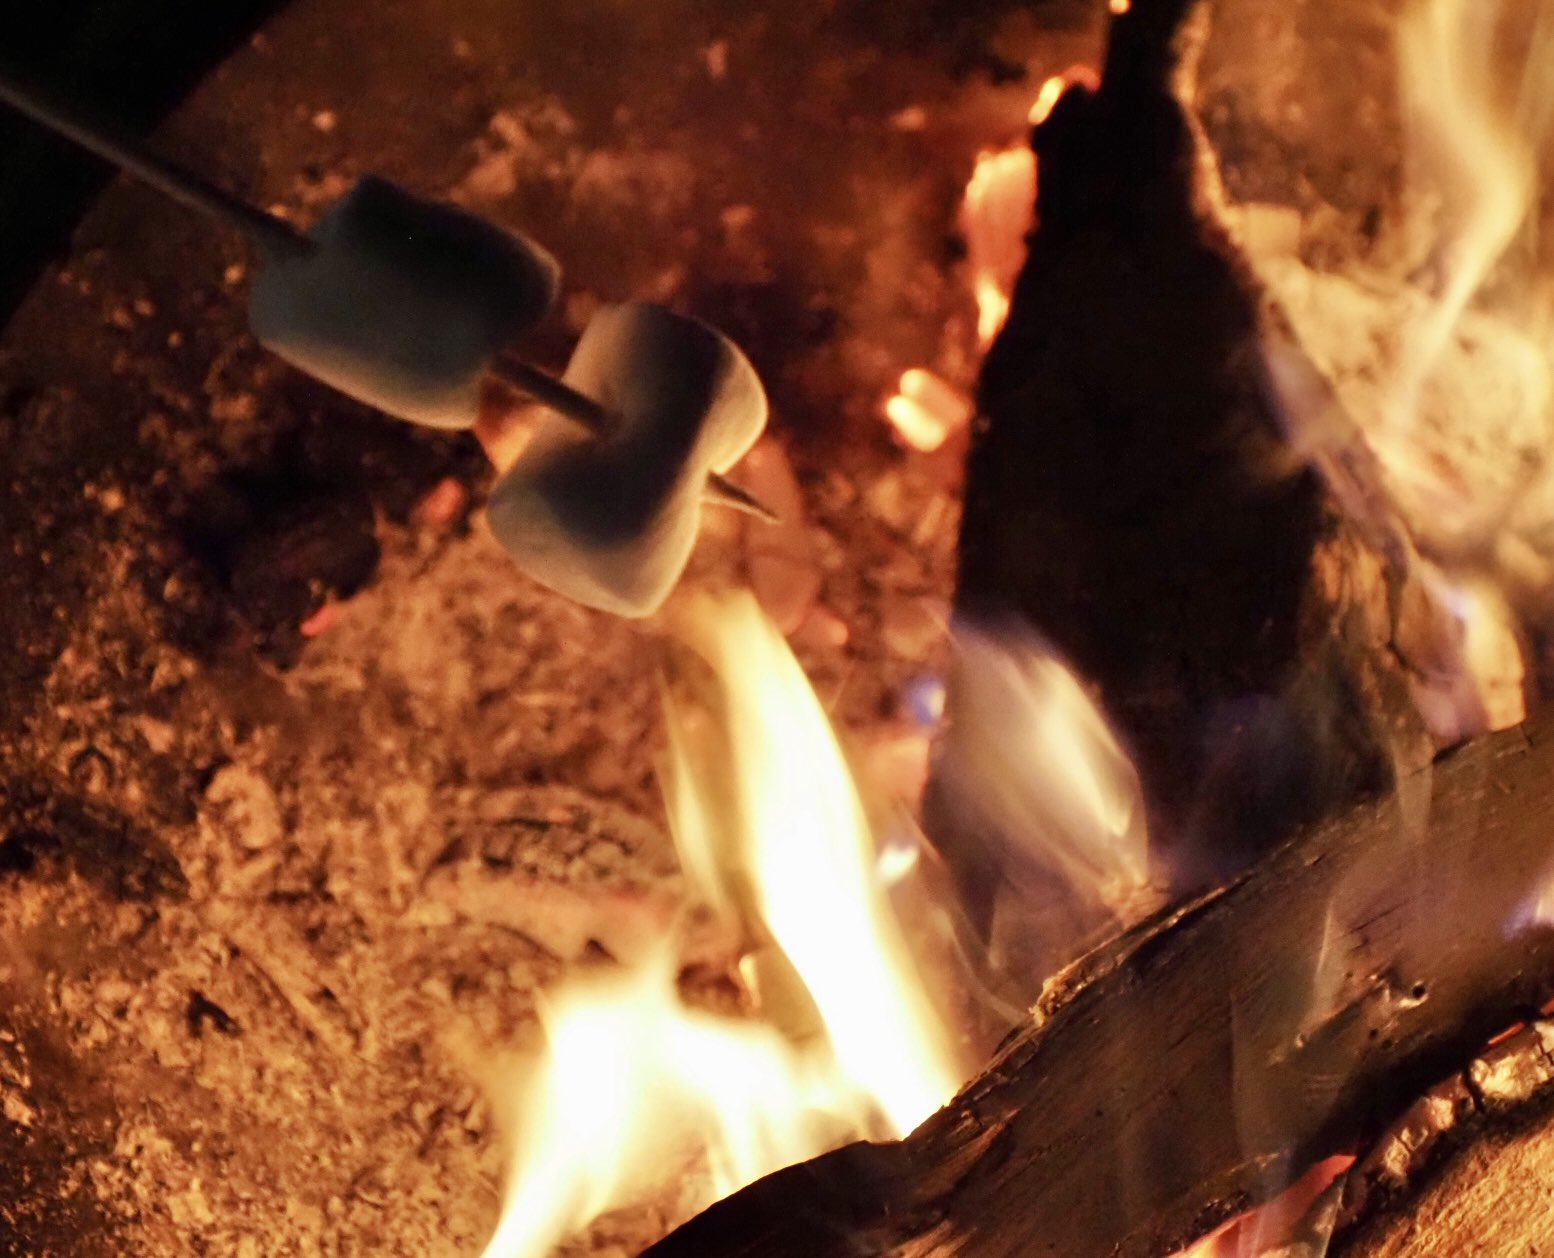 ロプロス 焚き火コーナーがあり 無料で炙りマシュマロのサービスも楽しめました T Co Zetp8gxe4m Twitter